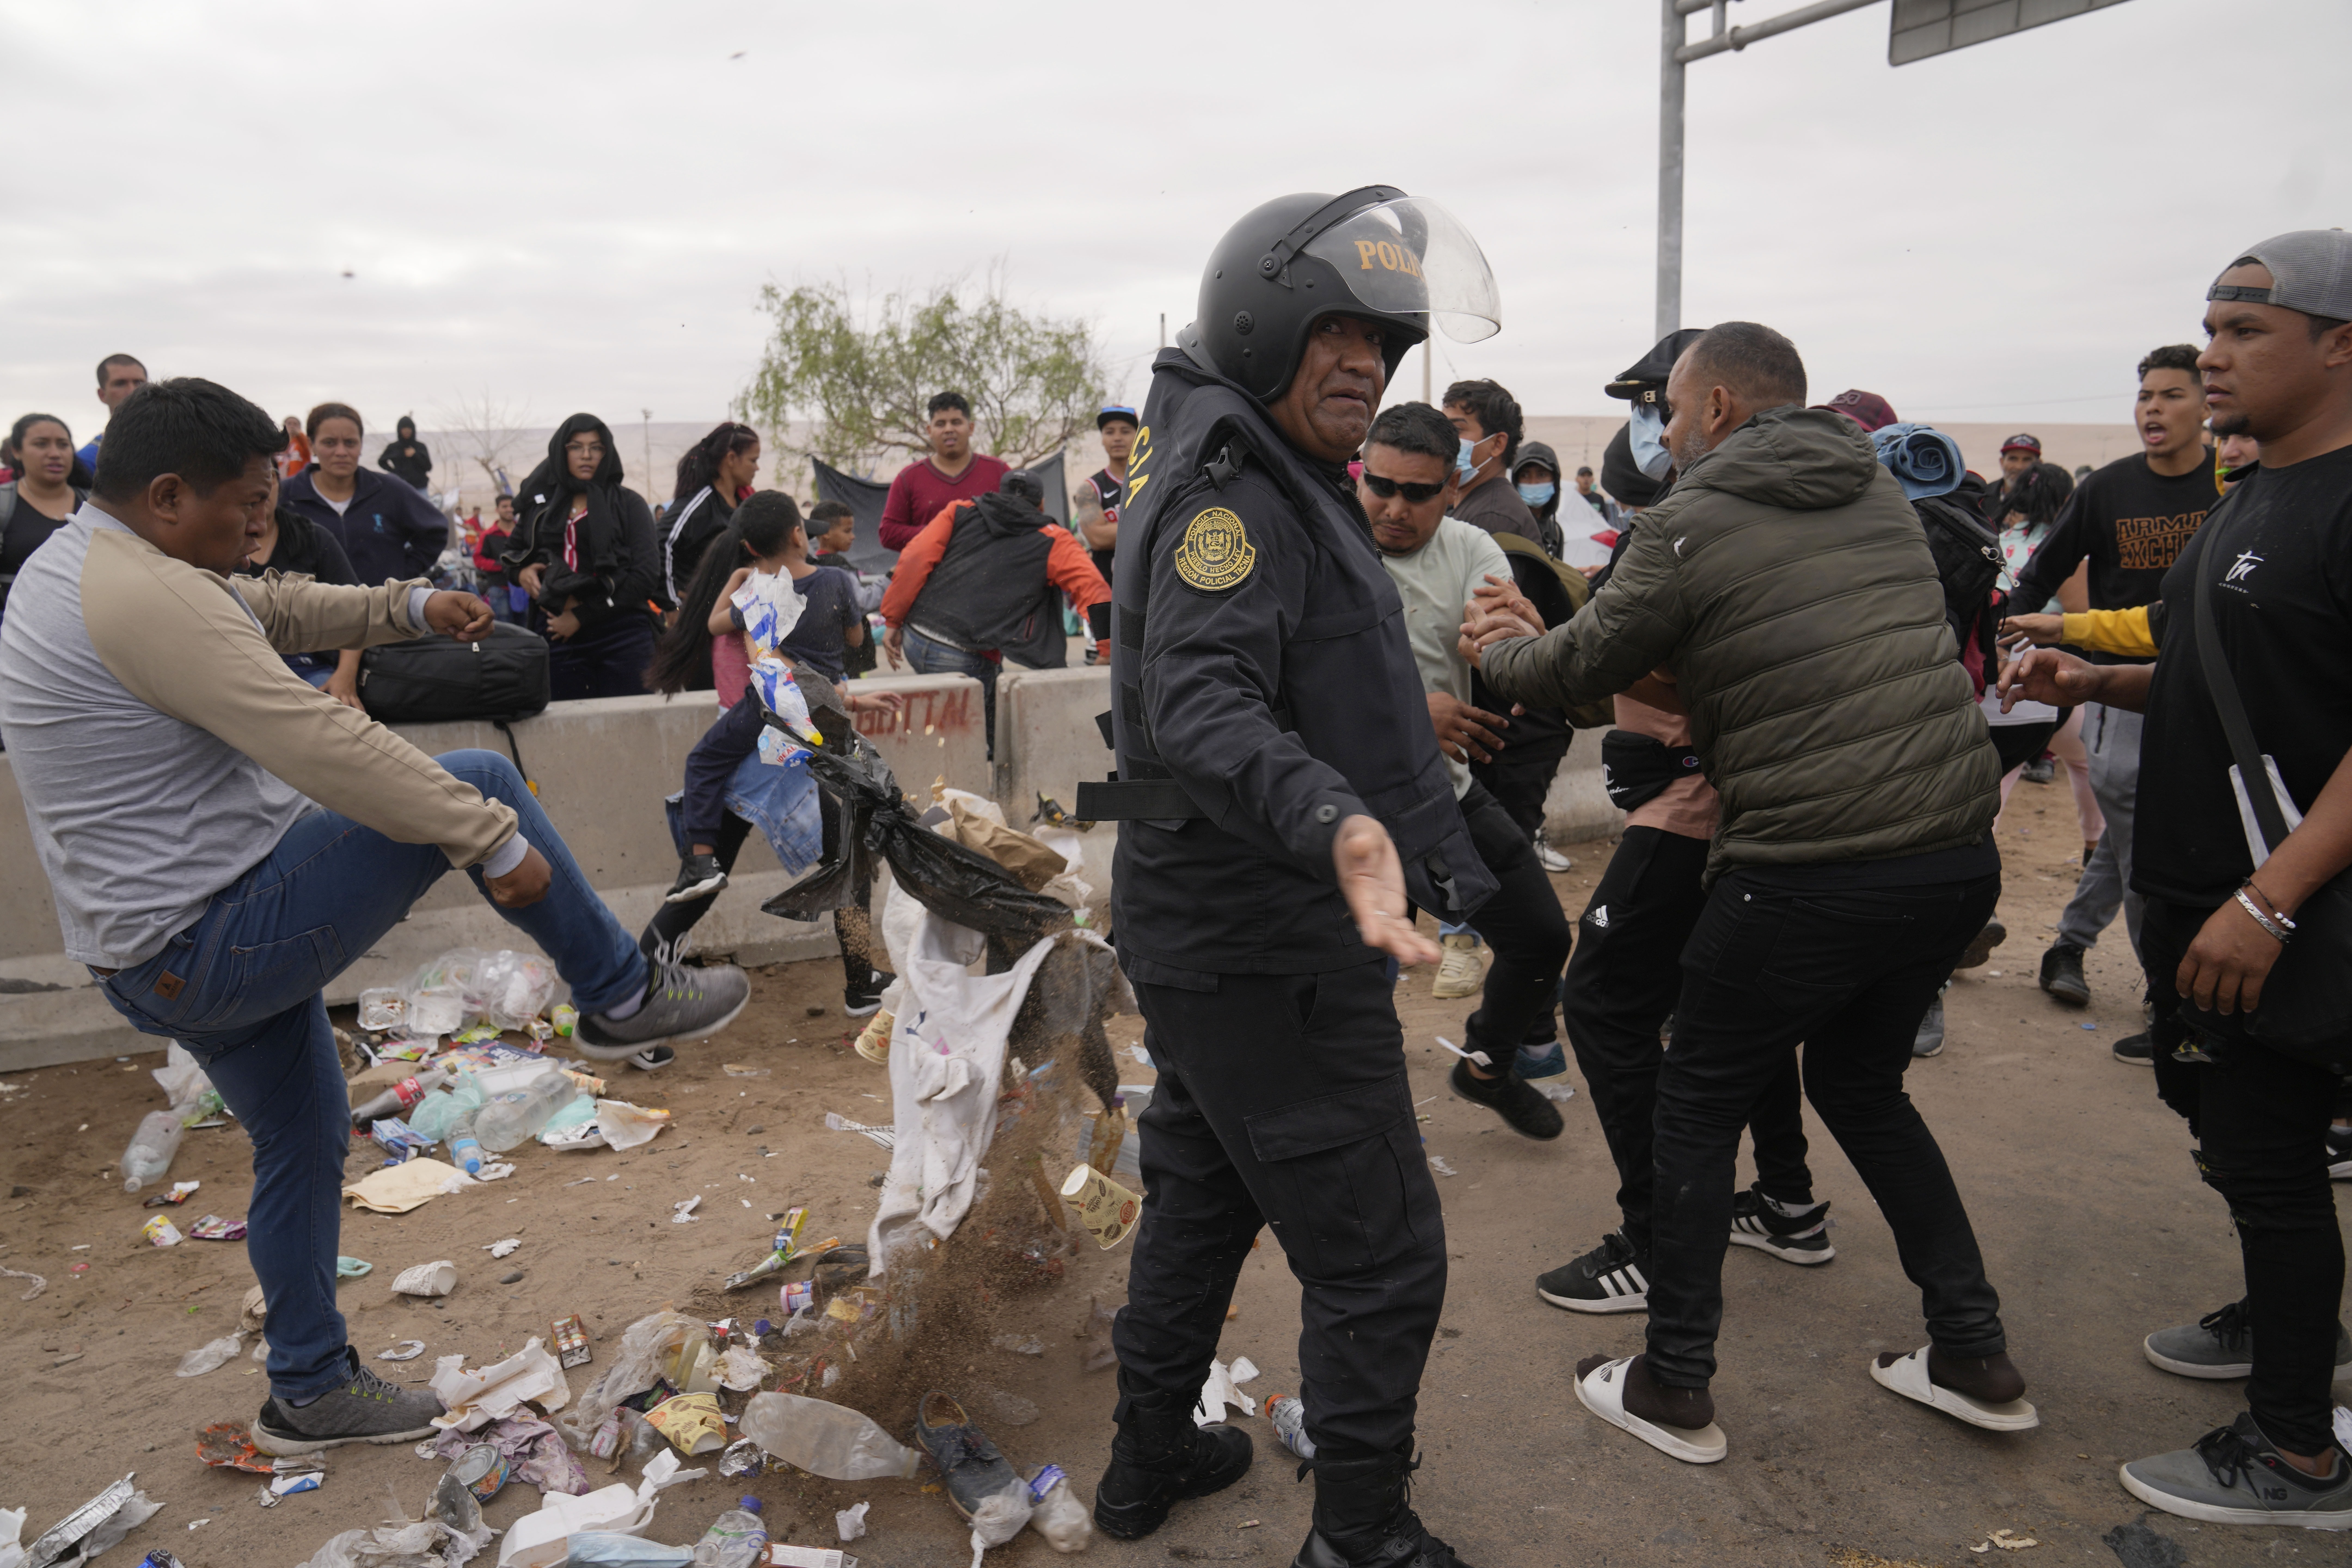 Sube tensión por migrantes varados en frontera Perú-Chile